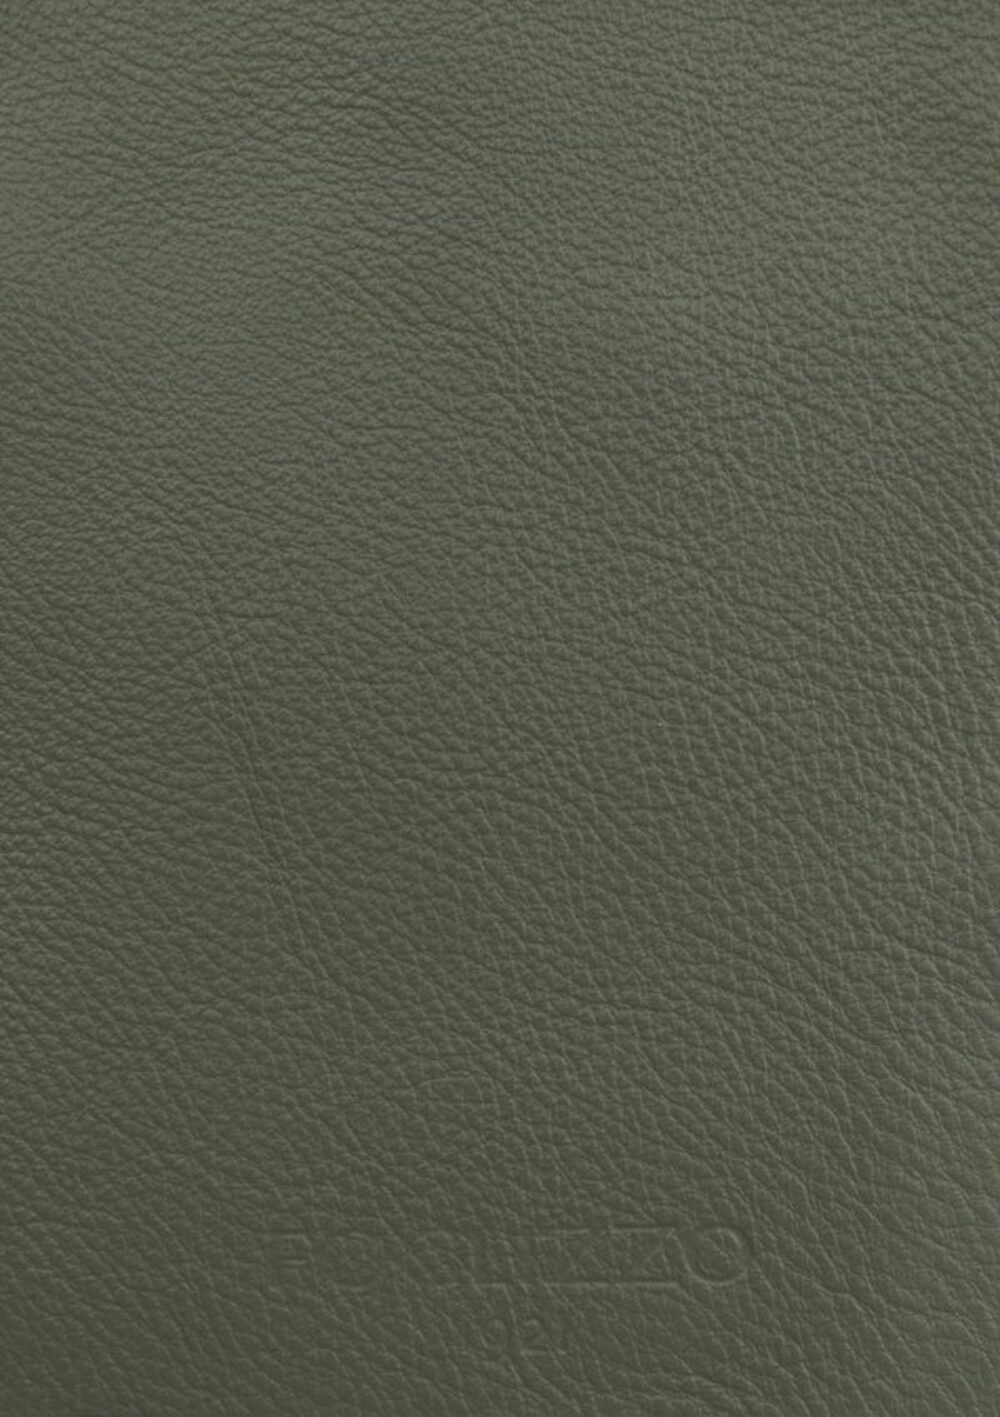 Diseño de lujo y alfombras de alta gama hechas a medida • Seal Grey Jade